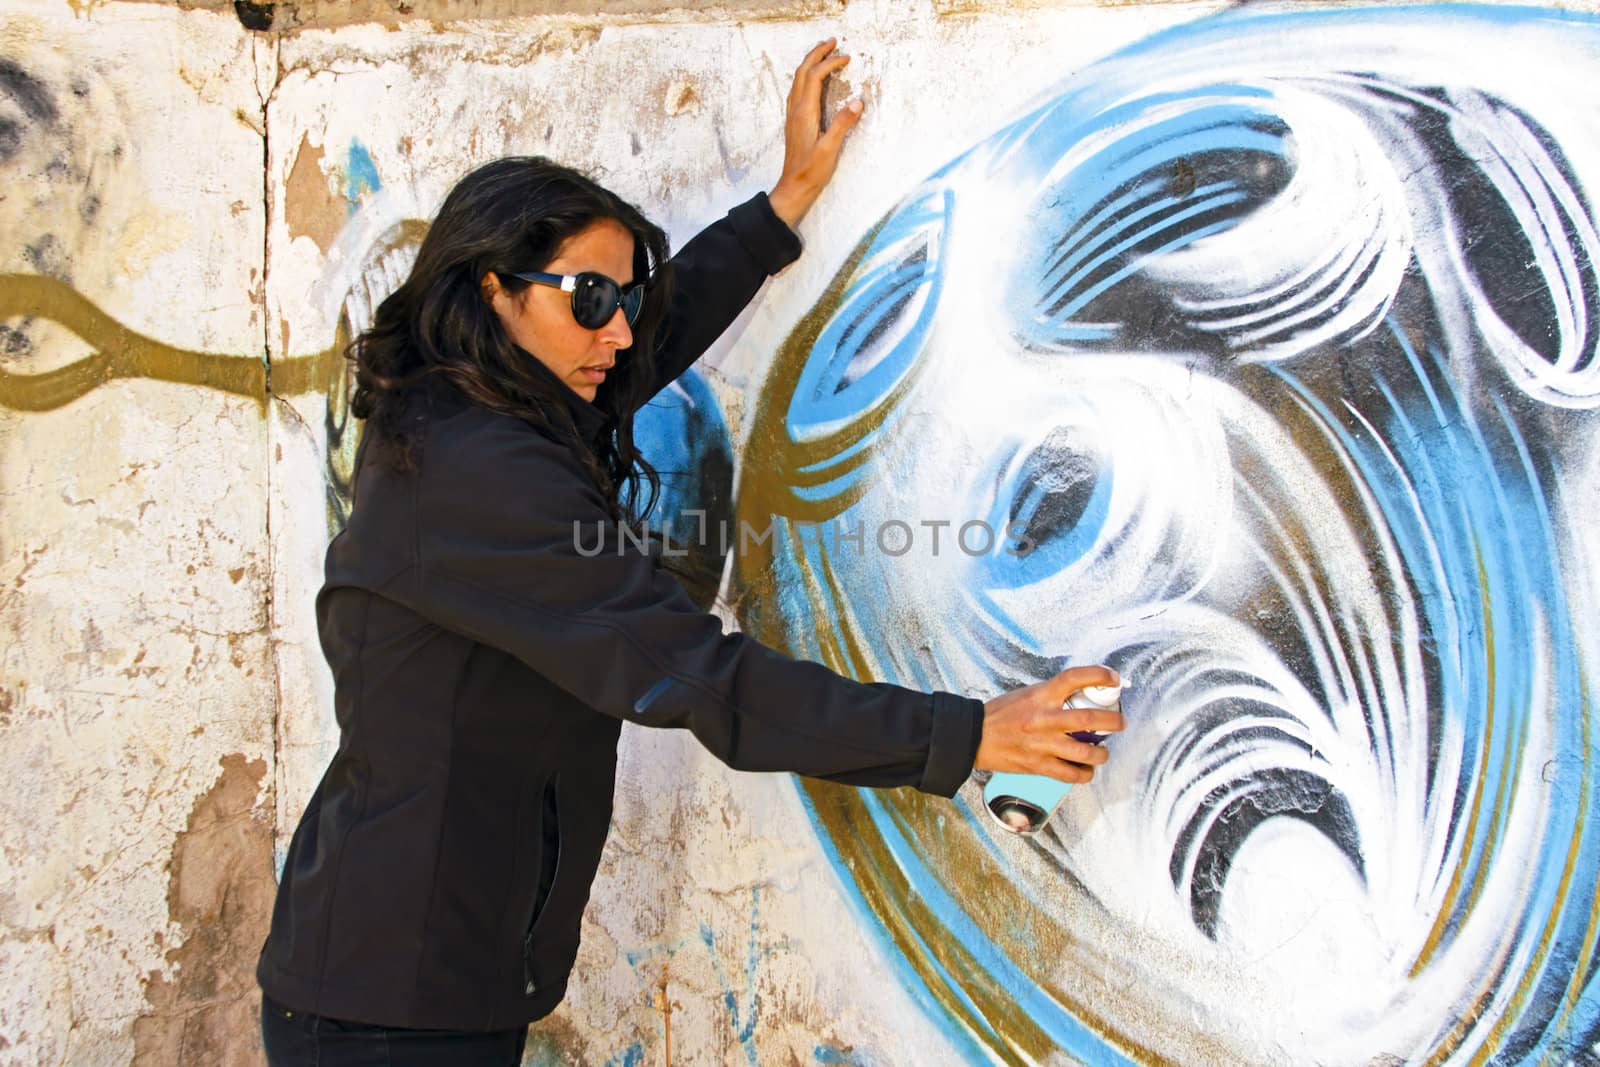 Woman in black spraying at a graffiti brick wall